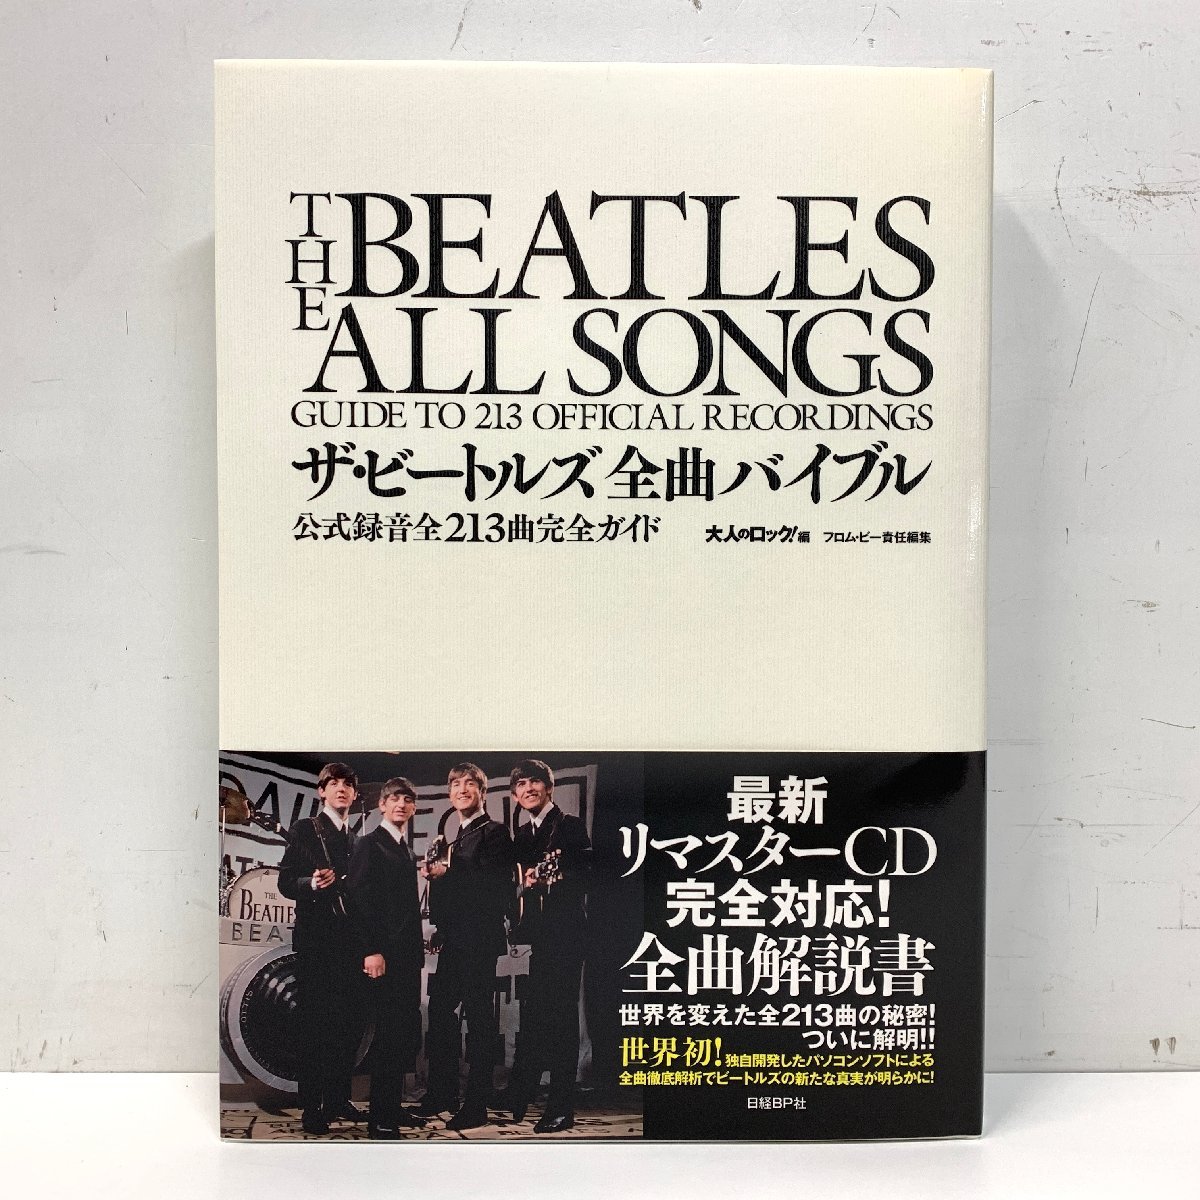 ザ・ビートルズ全曲バイブル 公式録音全213曲完全ガイド 日経BP社 The Beatles